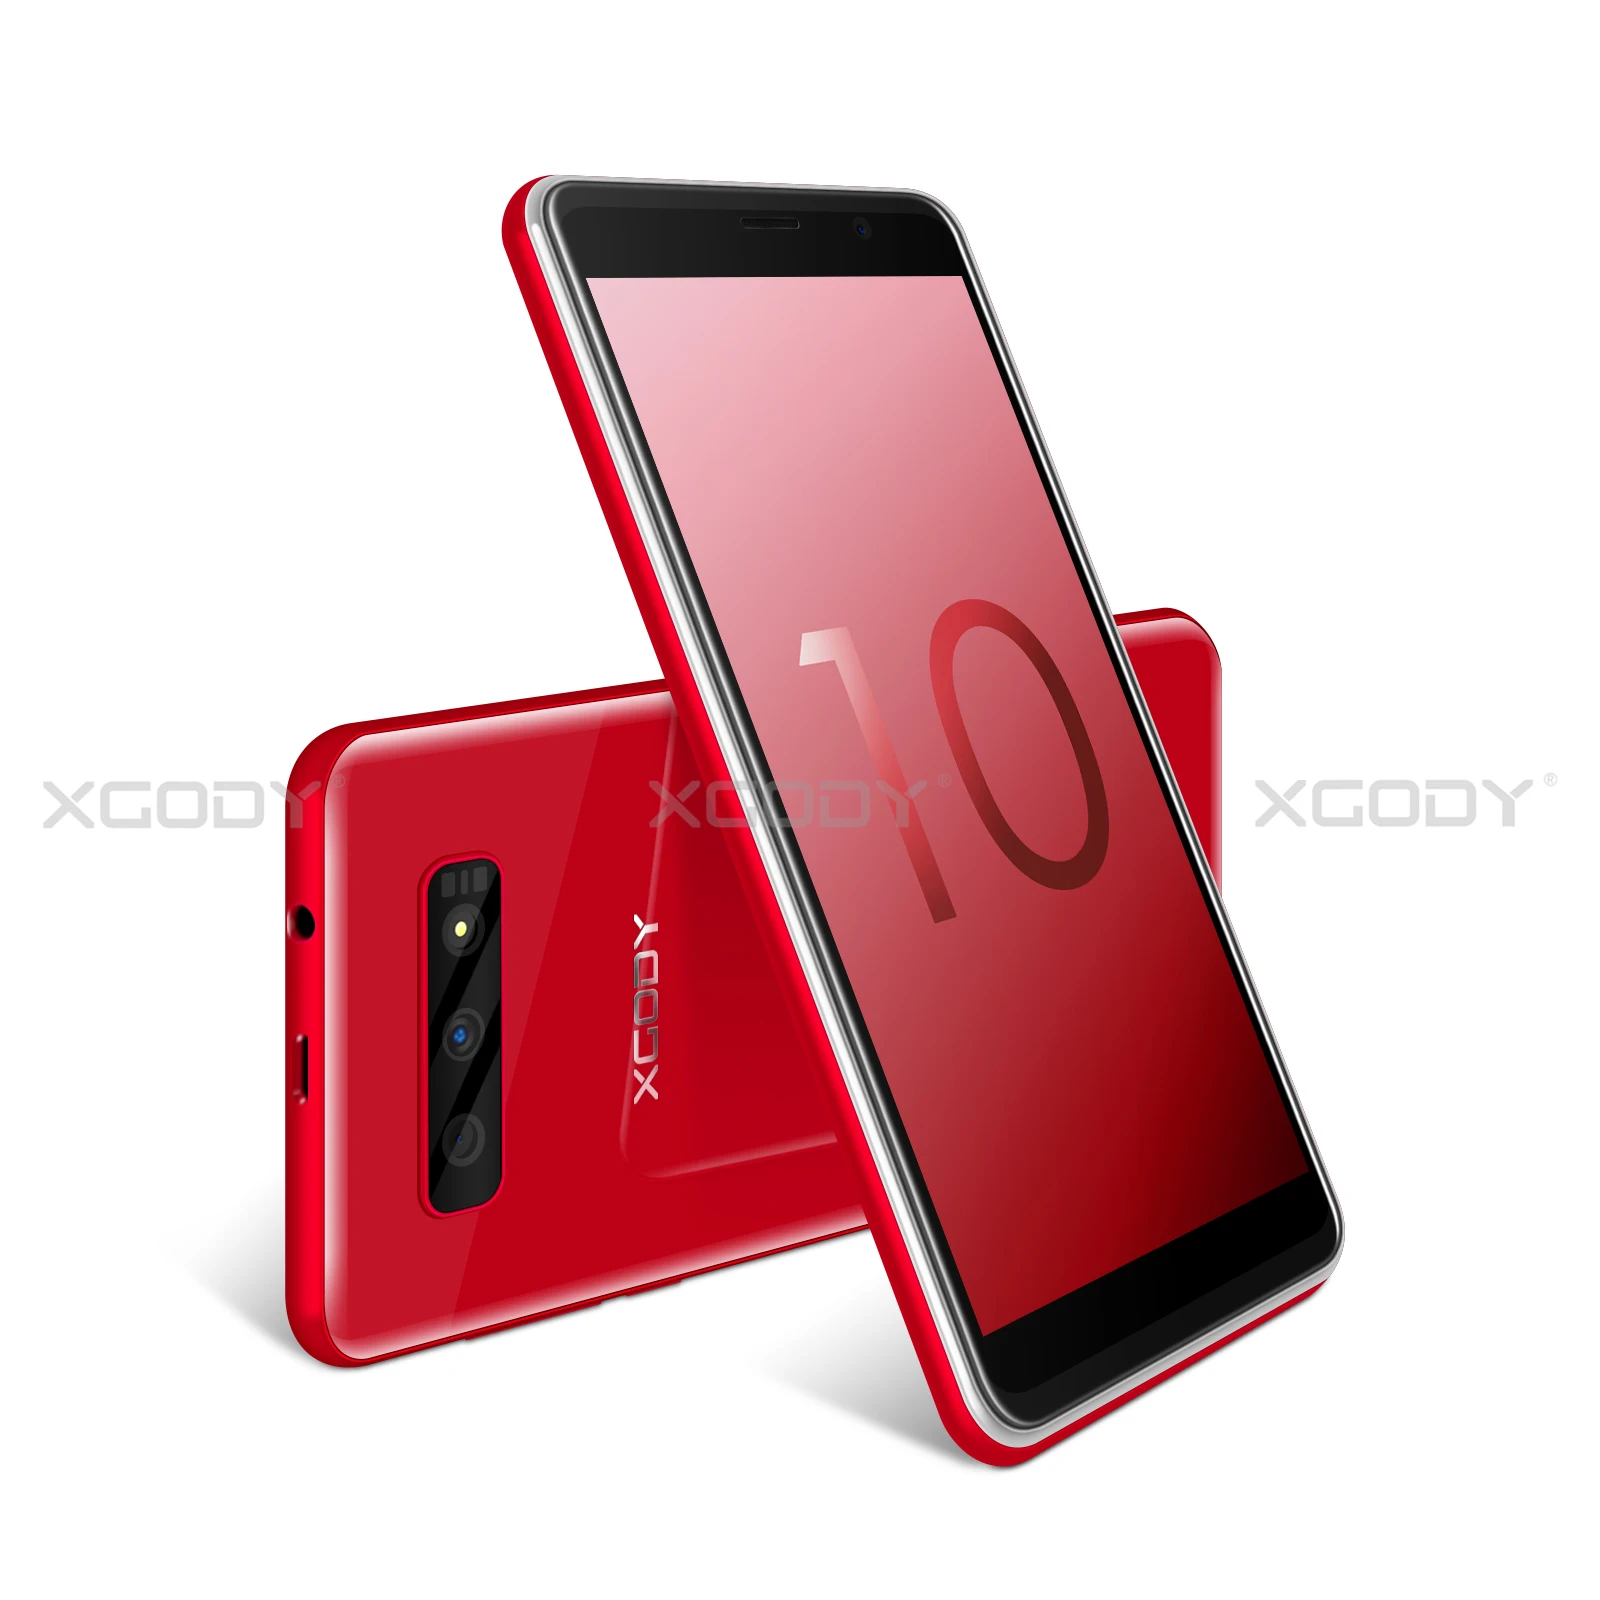 XGODY 5,5 дюймов 3G мобильный телефон 18:9 ОЗУ 2 Гб ПЗУ 16 Гб MT6580 четырехъядерный двойная камера 2500 мАч Android 8,1 смартфон - Цвет: Red